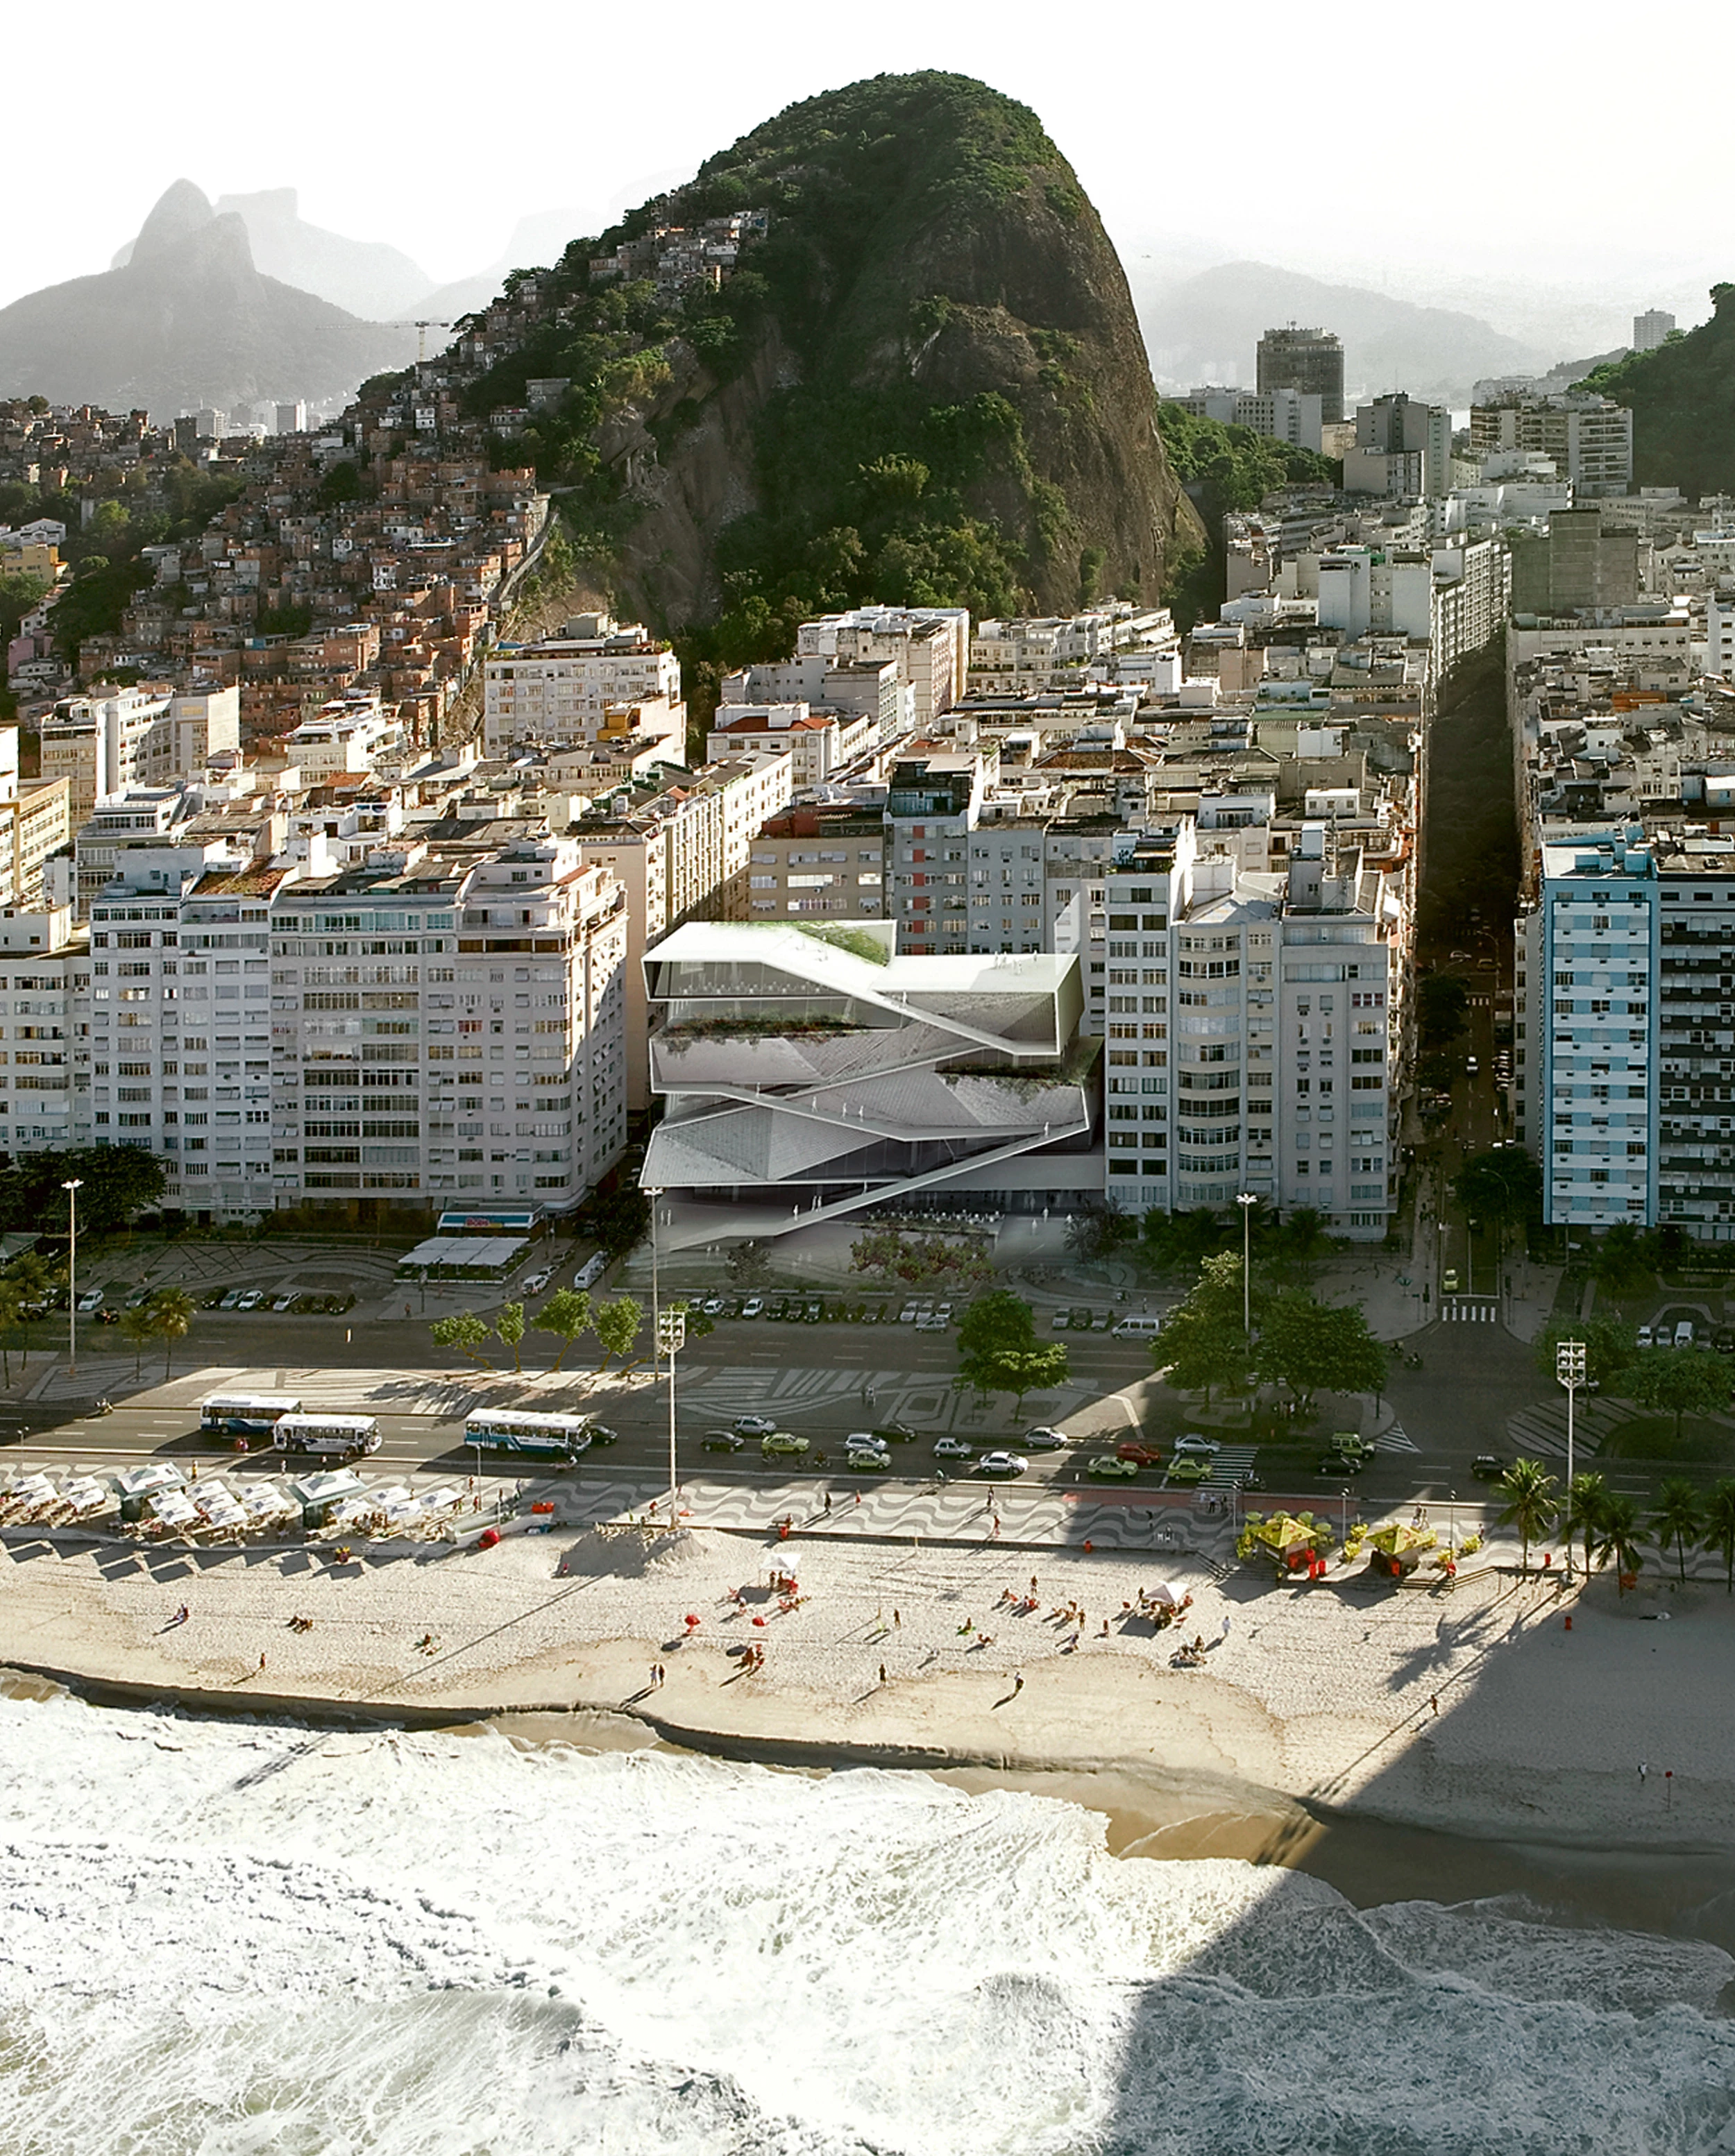 Gallery of In Progress: MIS Copacabana / Diller Scofidio + Renfro - 7